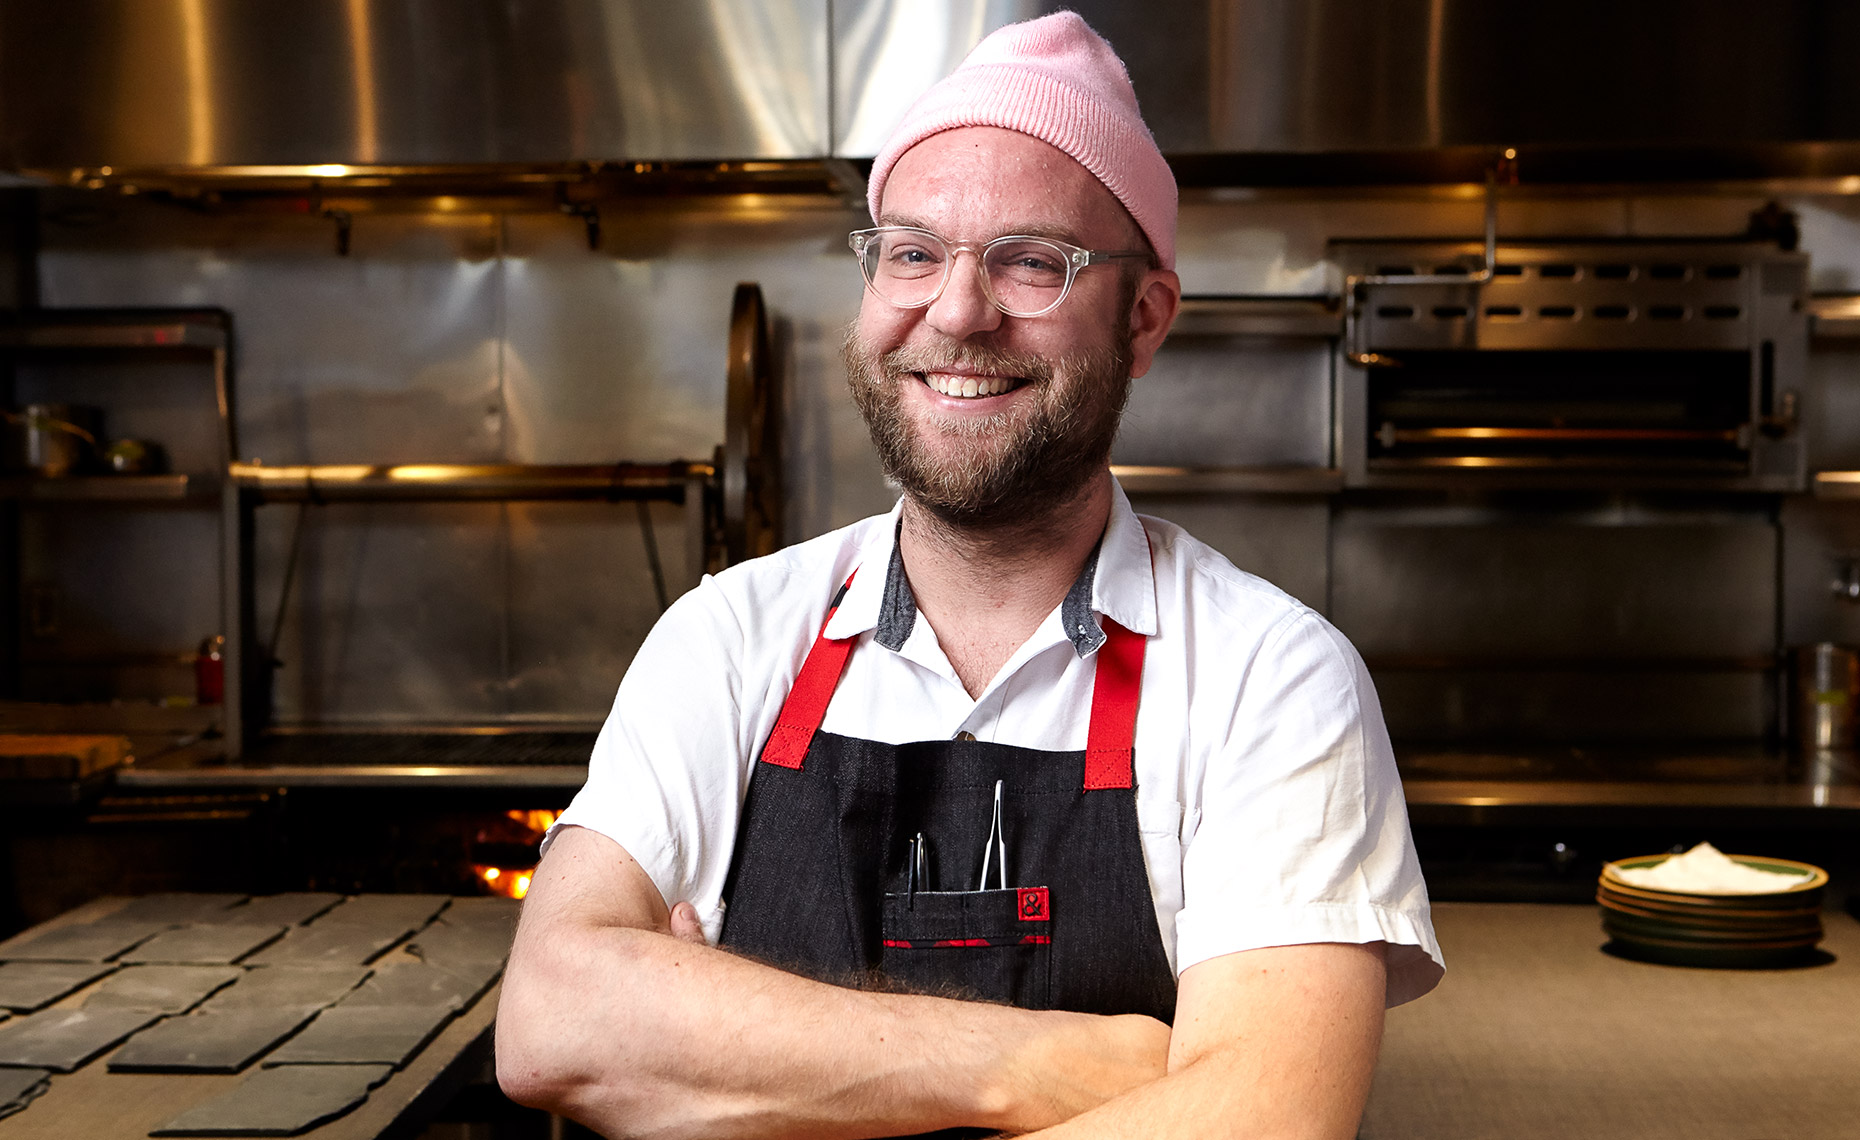 Portrait of chef in restaurant kitchen